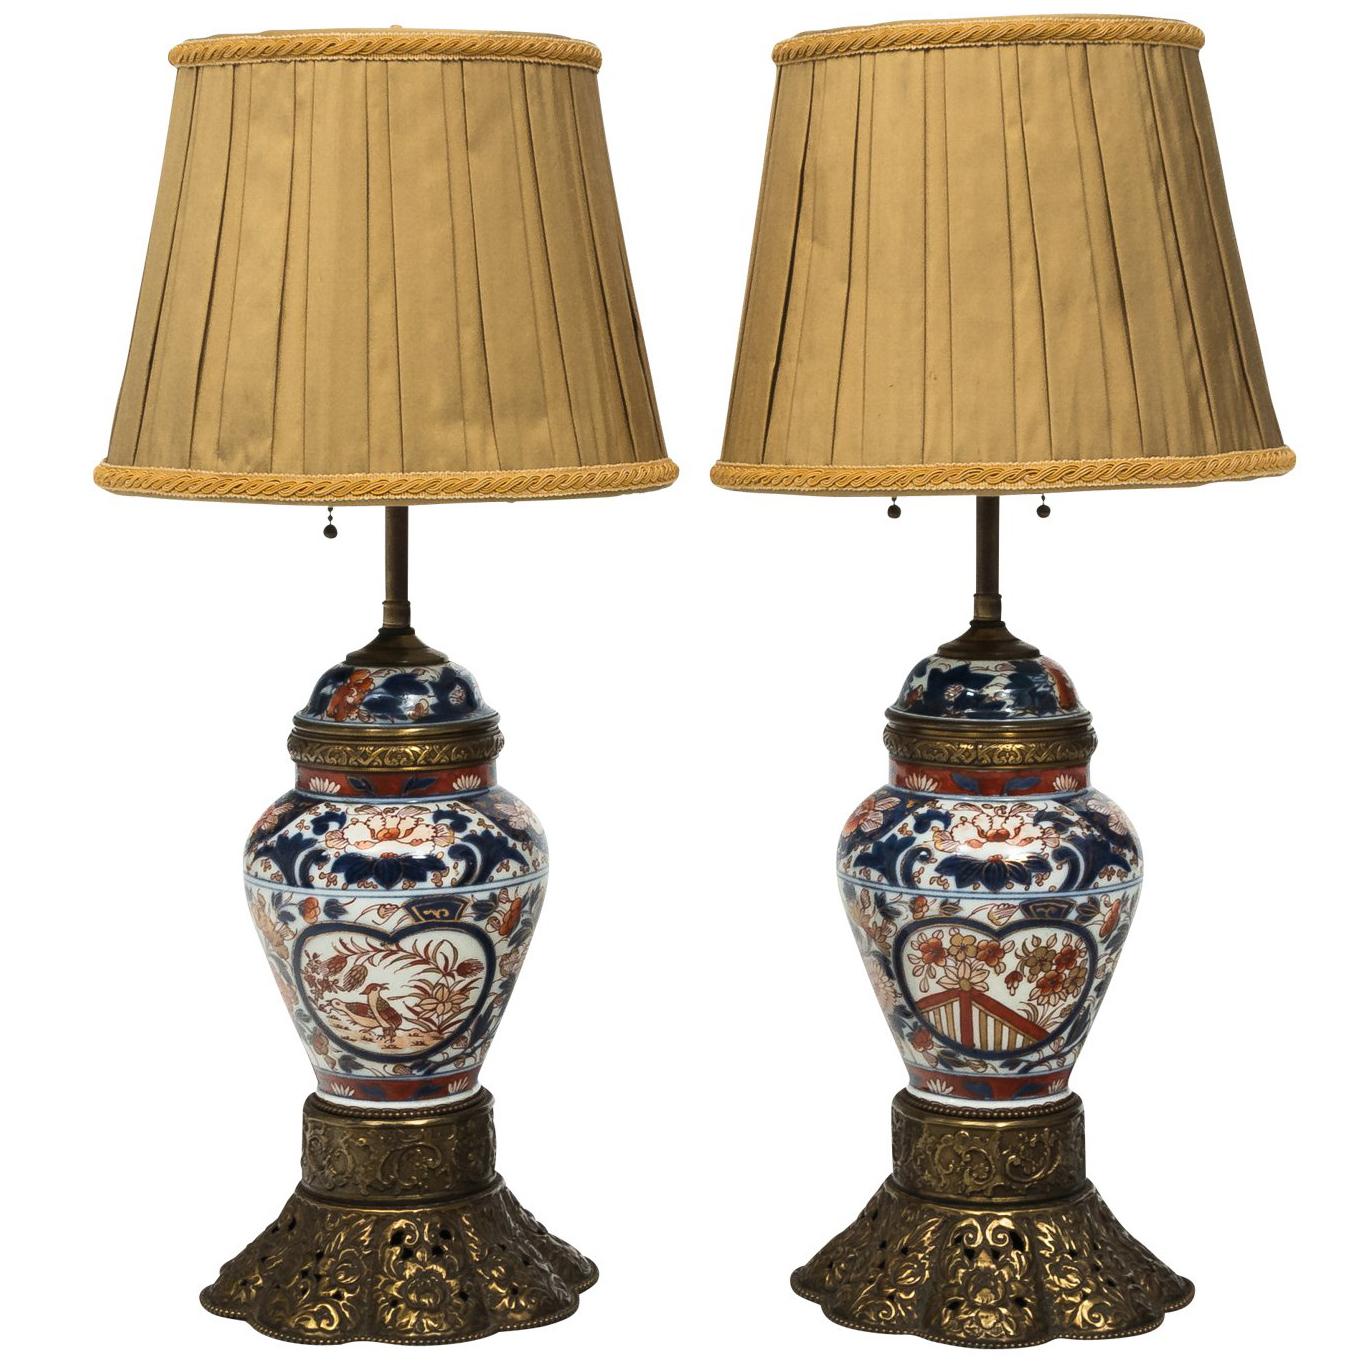 Pair of Japanese Porcelain Lamps by Imari